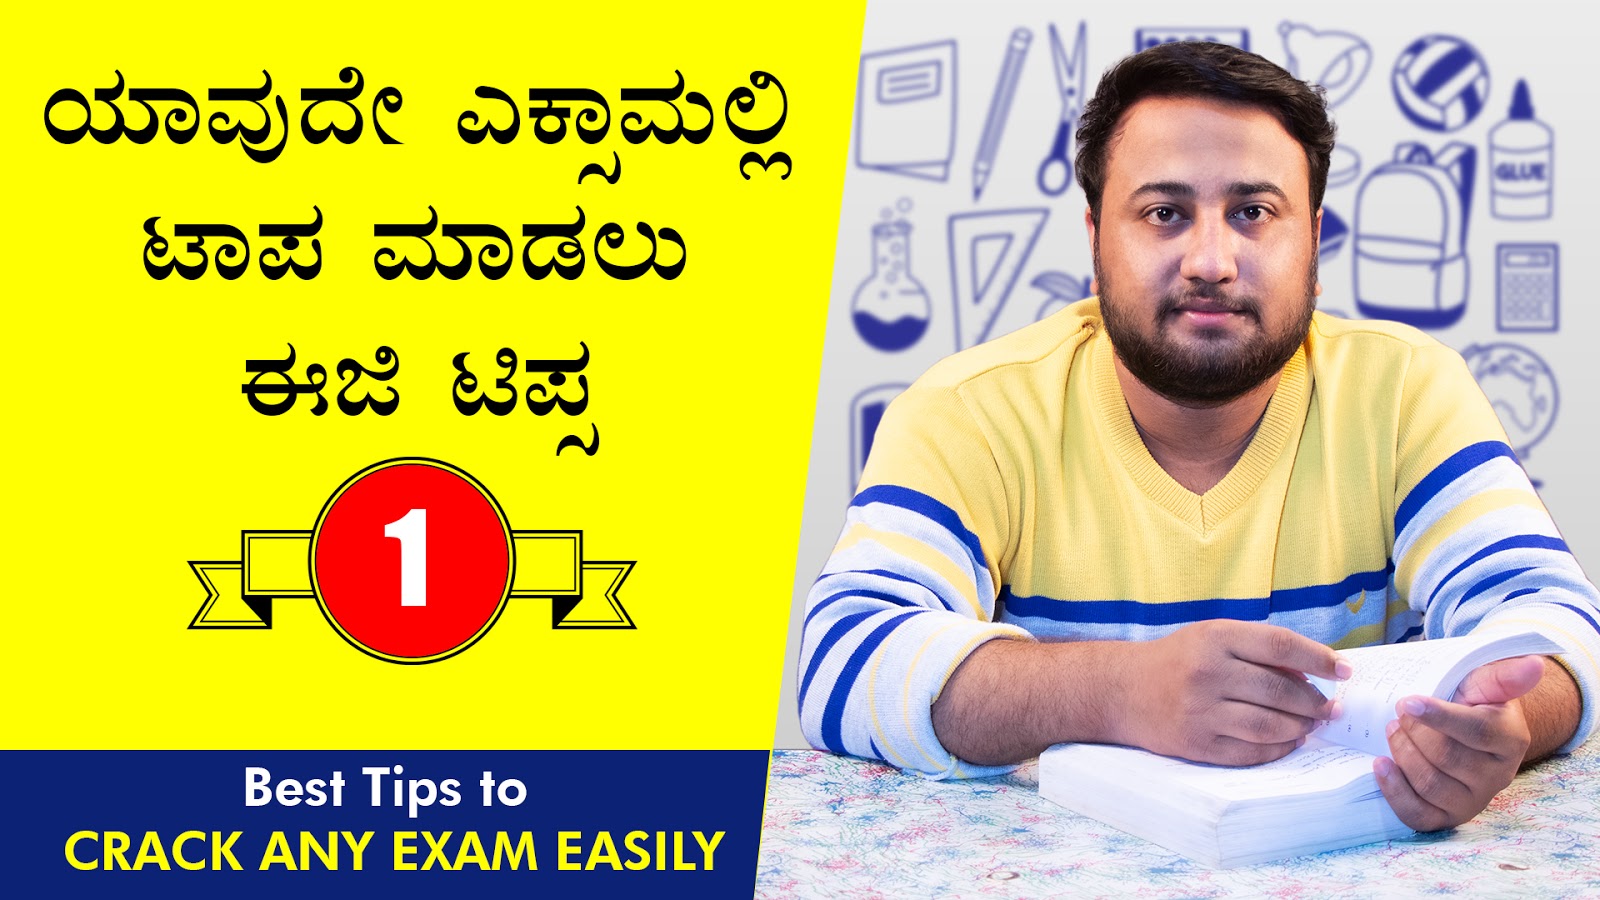 ಯಾವುದೇ ಎಕ್ಸಾಮಲ್ಲಿ‌ ಟಾಪ ಮಾಡಲು ಈಜಿ ಟಿಪ್ಸ : Best Tips to Crack Any Exam Easily in Kannada - Study Tips in Kannada 